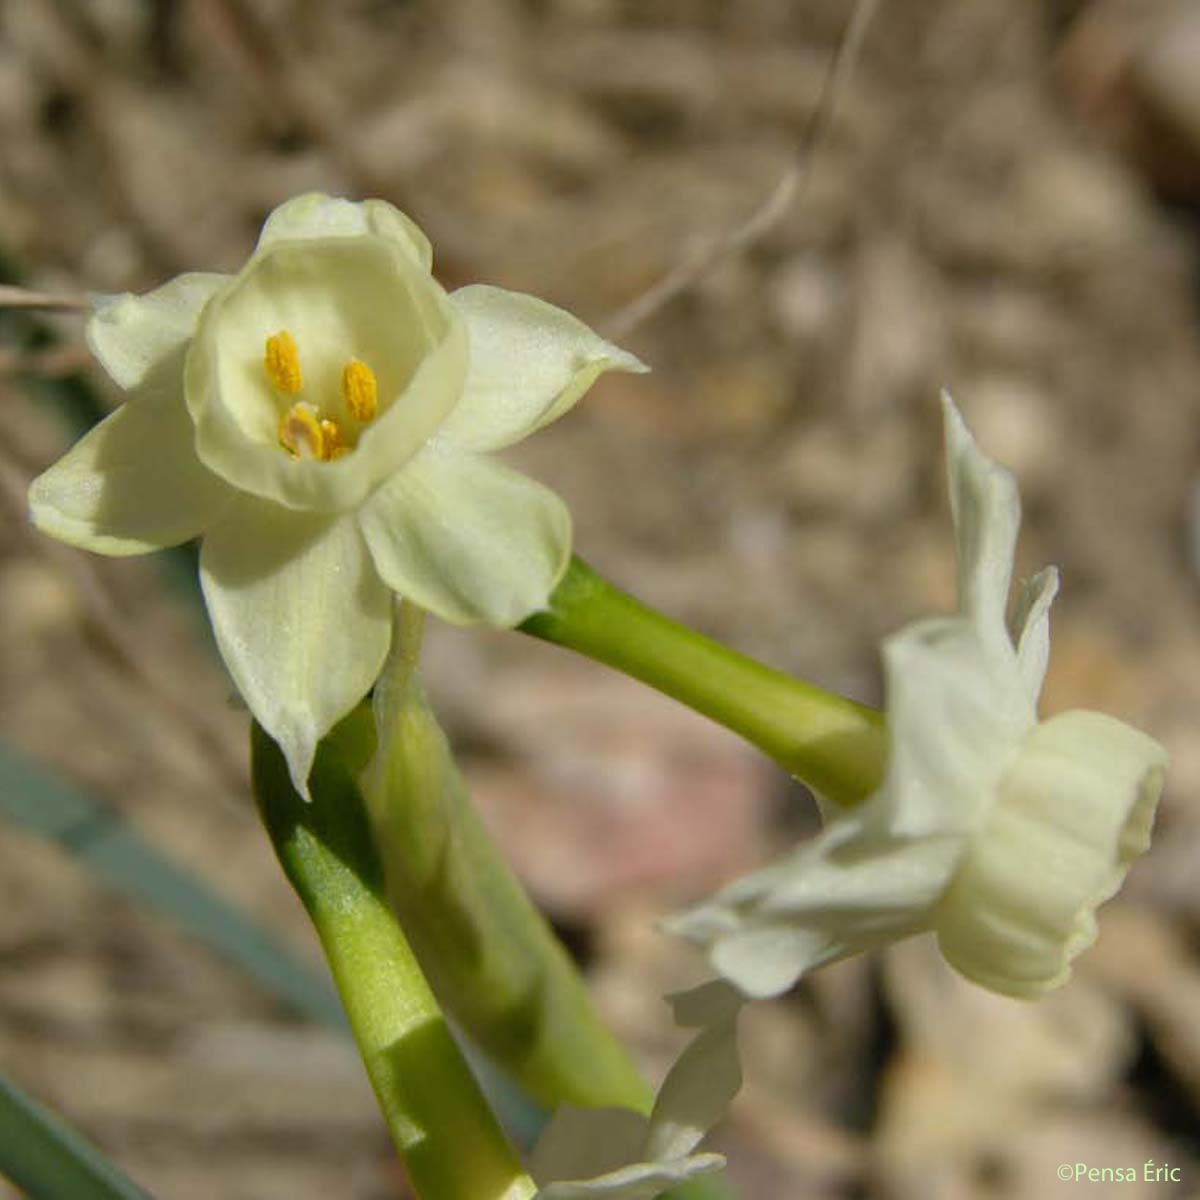 Narcisse douteux - Narcissus dubius